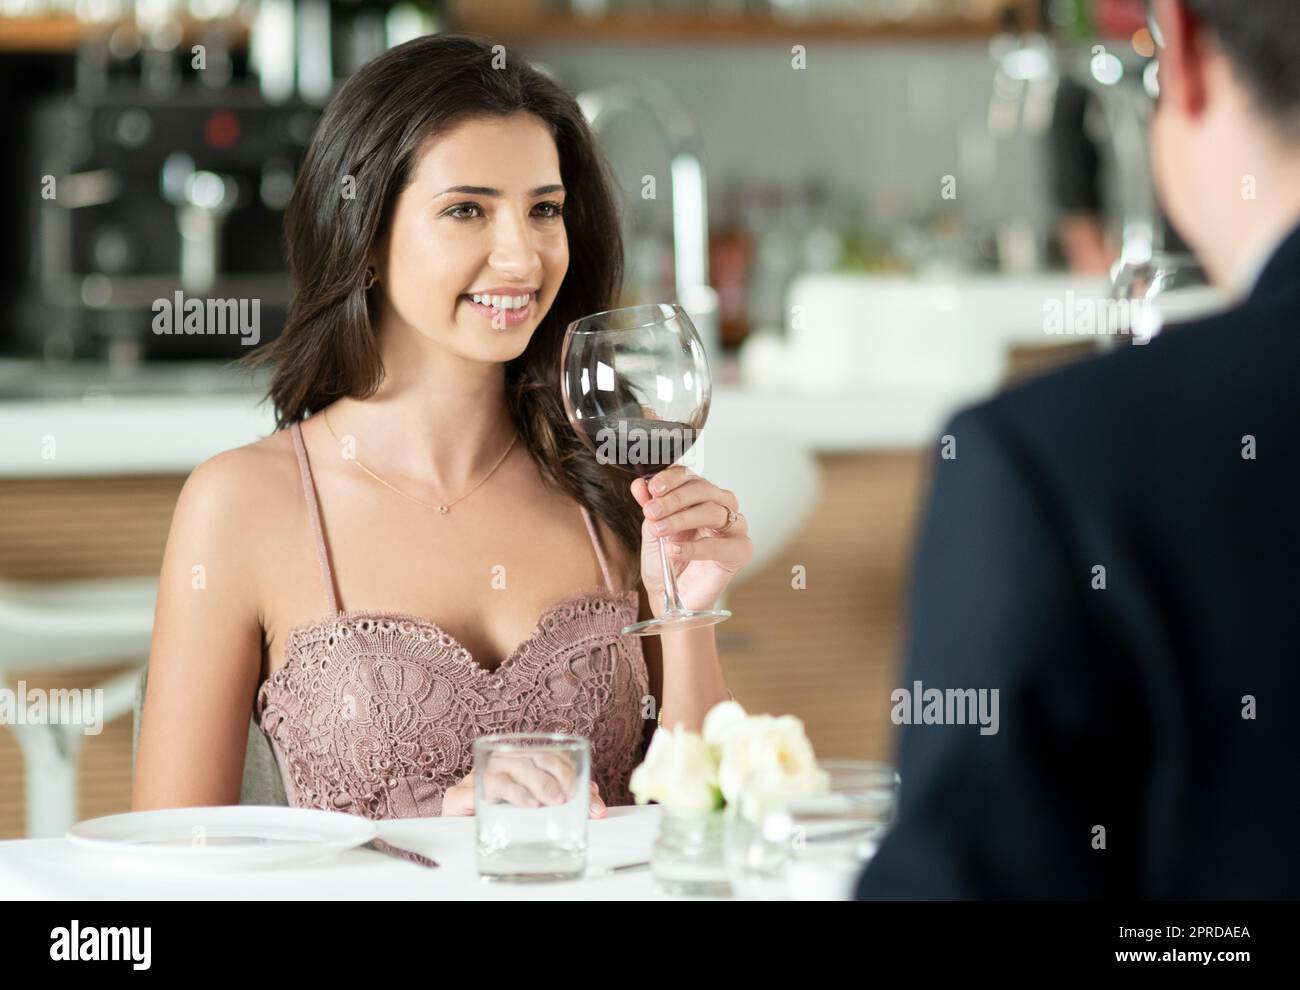 Ich denke, er könnte der eine sein. Ein glückliches junges Paar genießt ein romantisches Date in einem Restaurant. Stockfoto